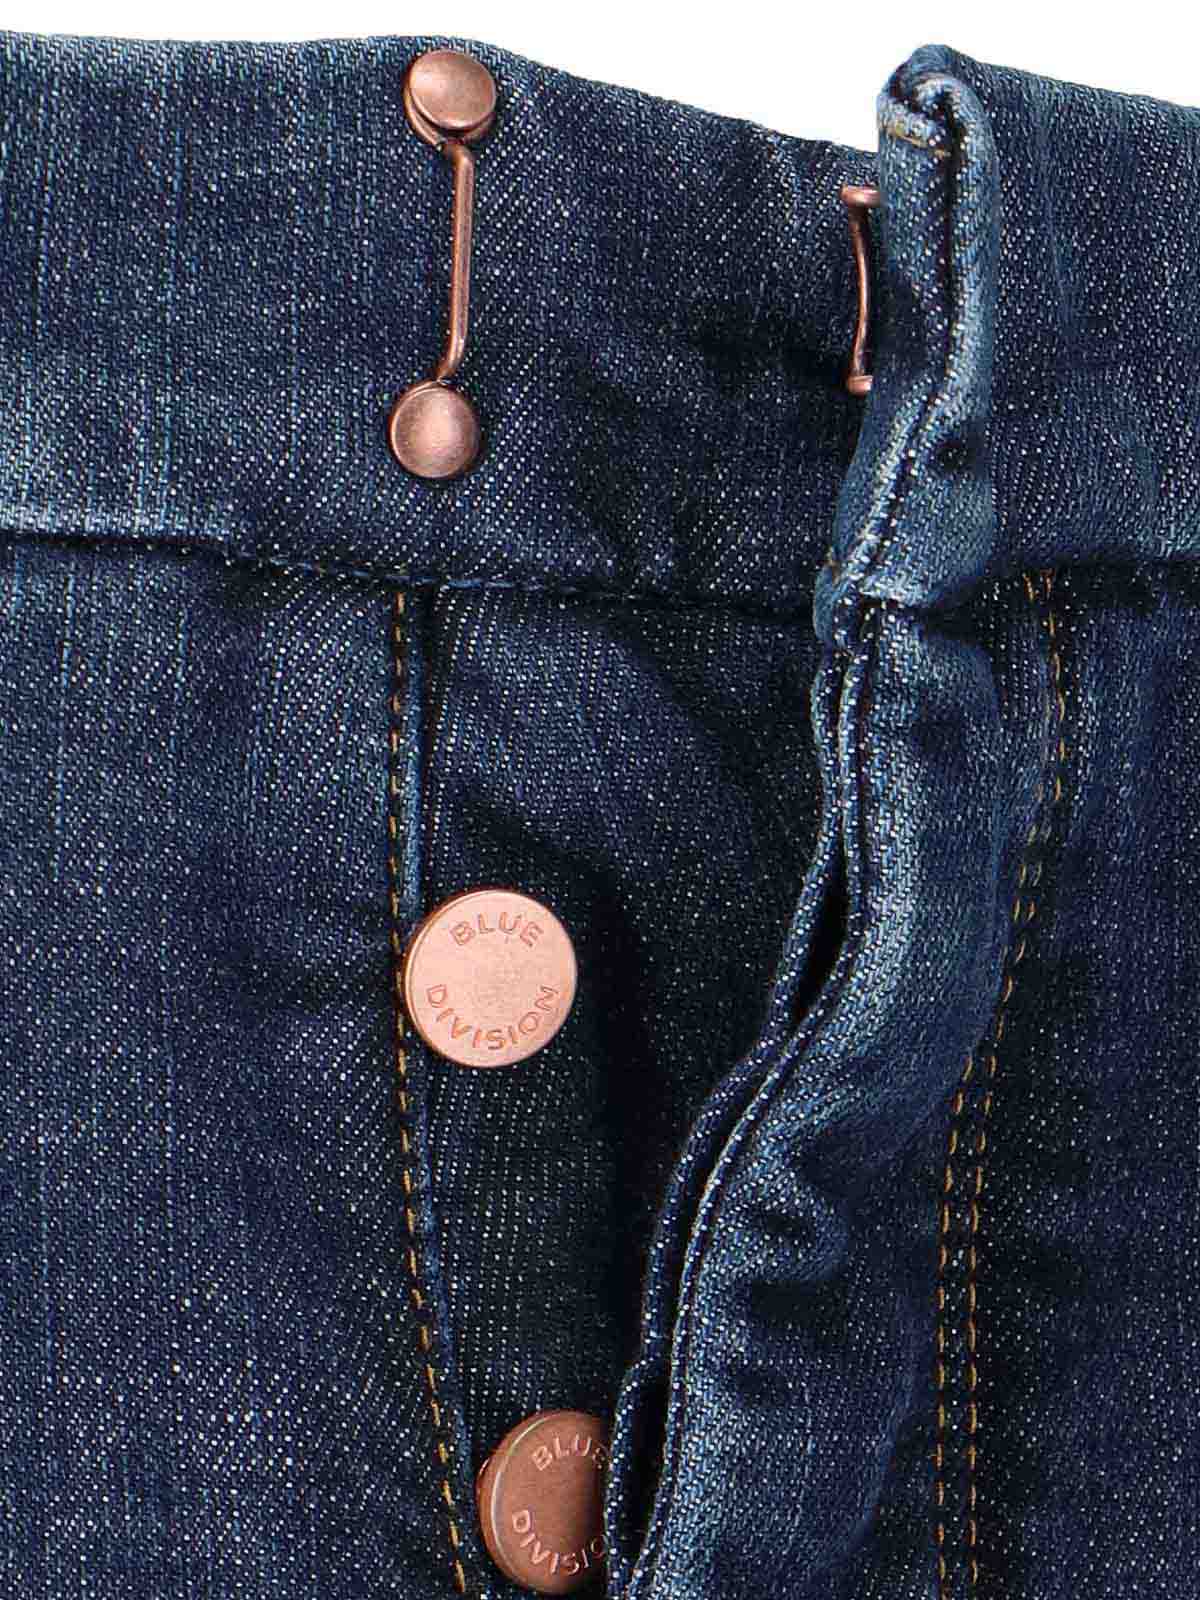 Shop Incotex Jeans Boot-cut - Blue Division